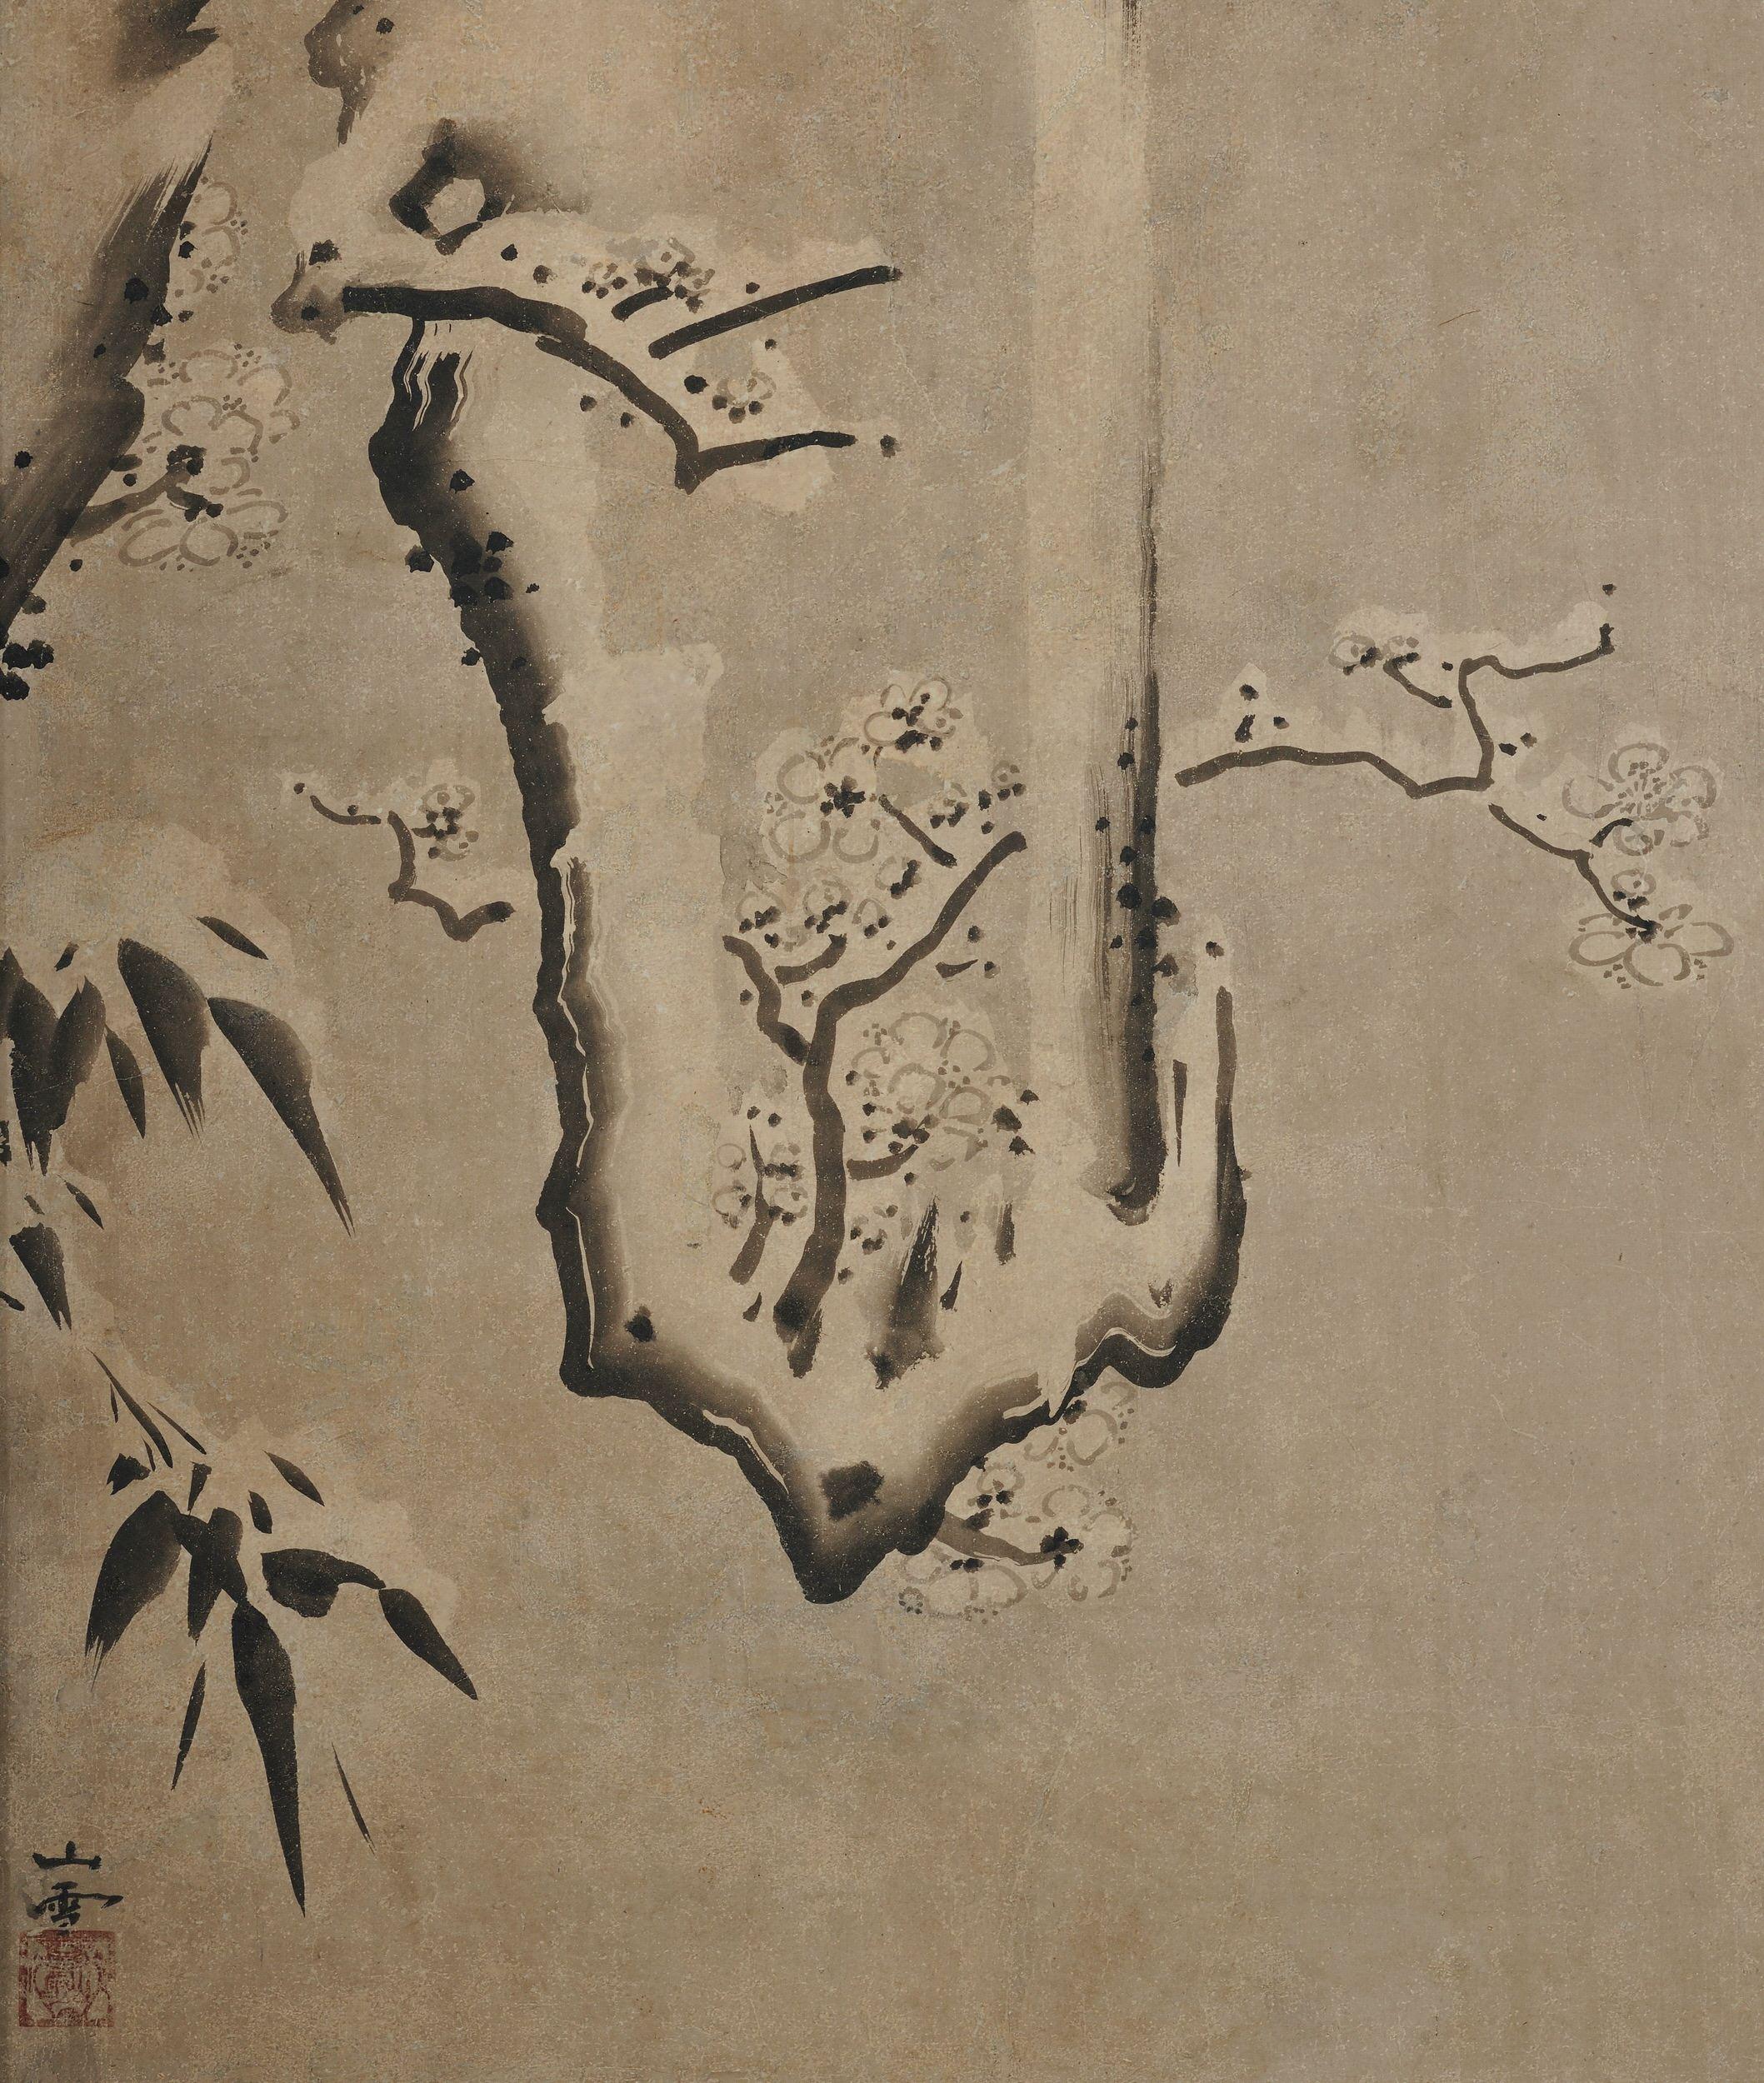 Kano Sansetsu (1589-1651)

Fleurs de prunier dans la neige

Période Edo, vers 1640

Peinture encadrée. Encre sur papier.

Kano Sansetsu est un peintre japonais qui a représenté l'école Kyo Kano (Kyoto Kano) de la fin du Momoyama au début de